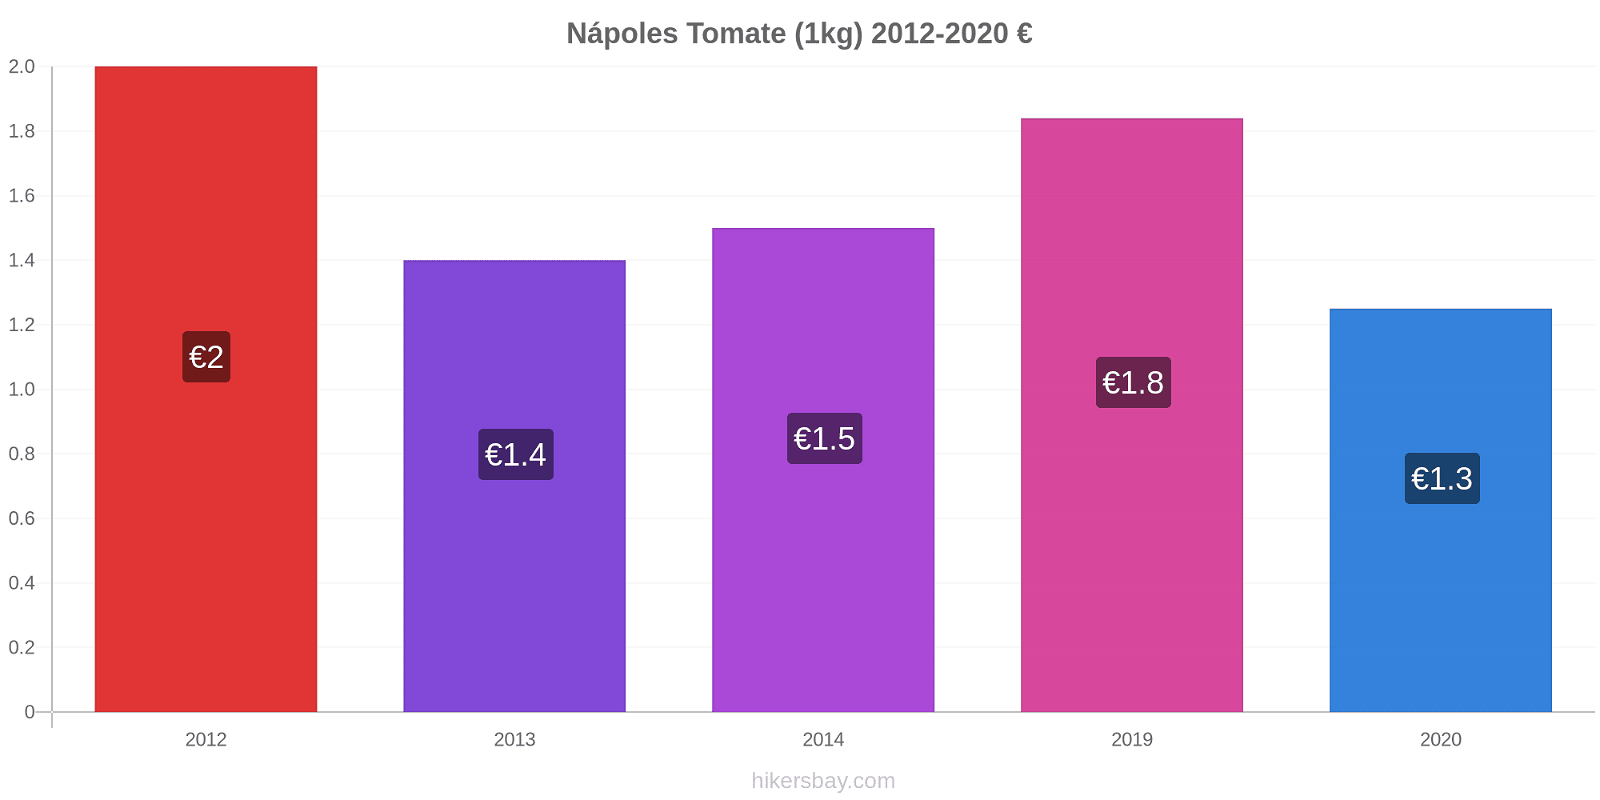 Nápoles cambios de precios Tomate (1kg) hikersbay.com